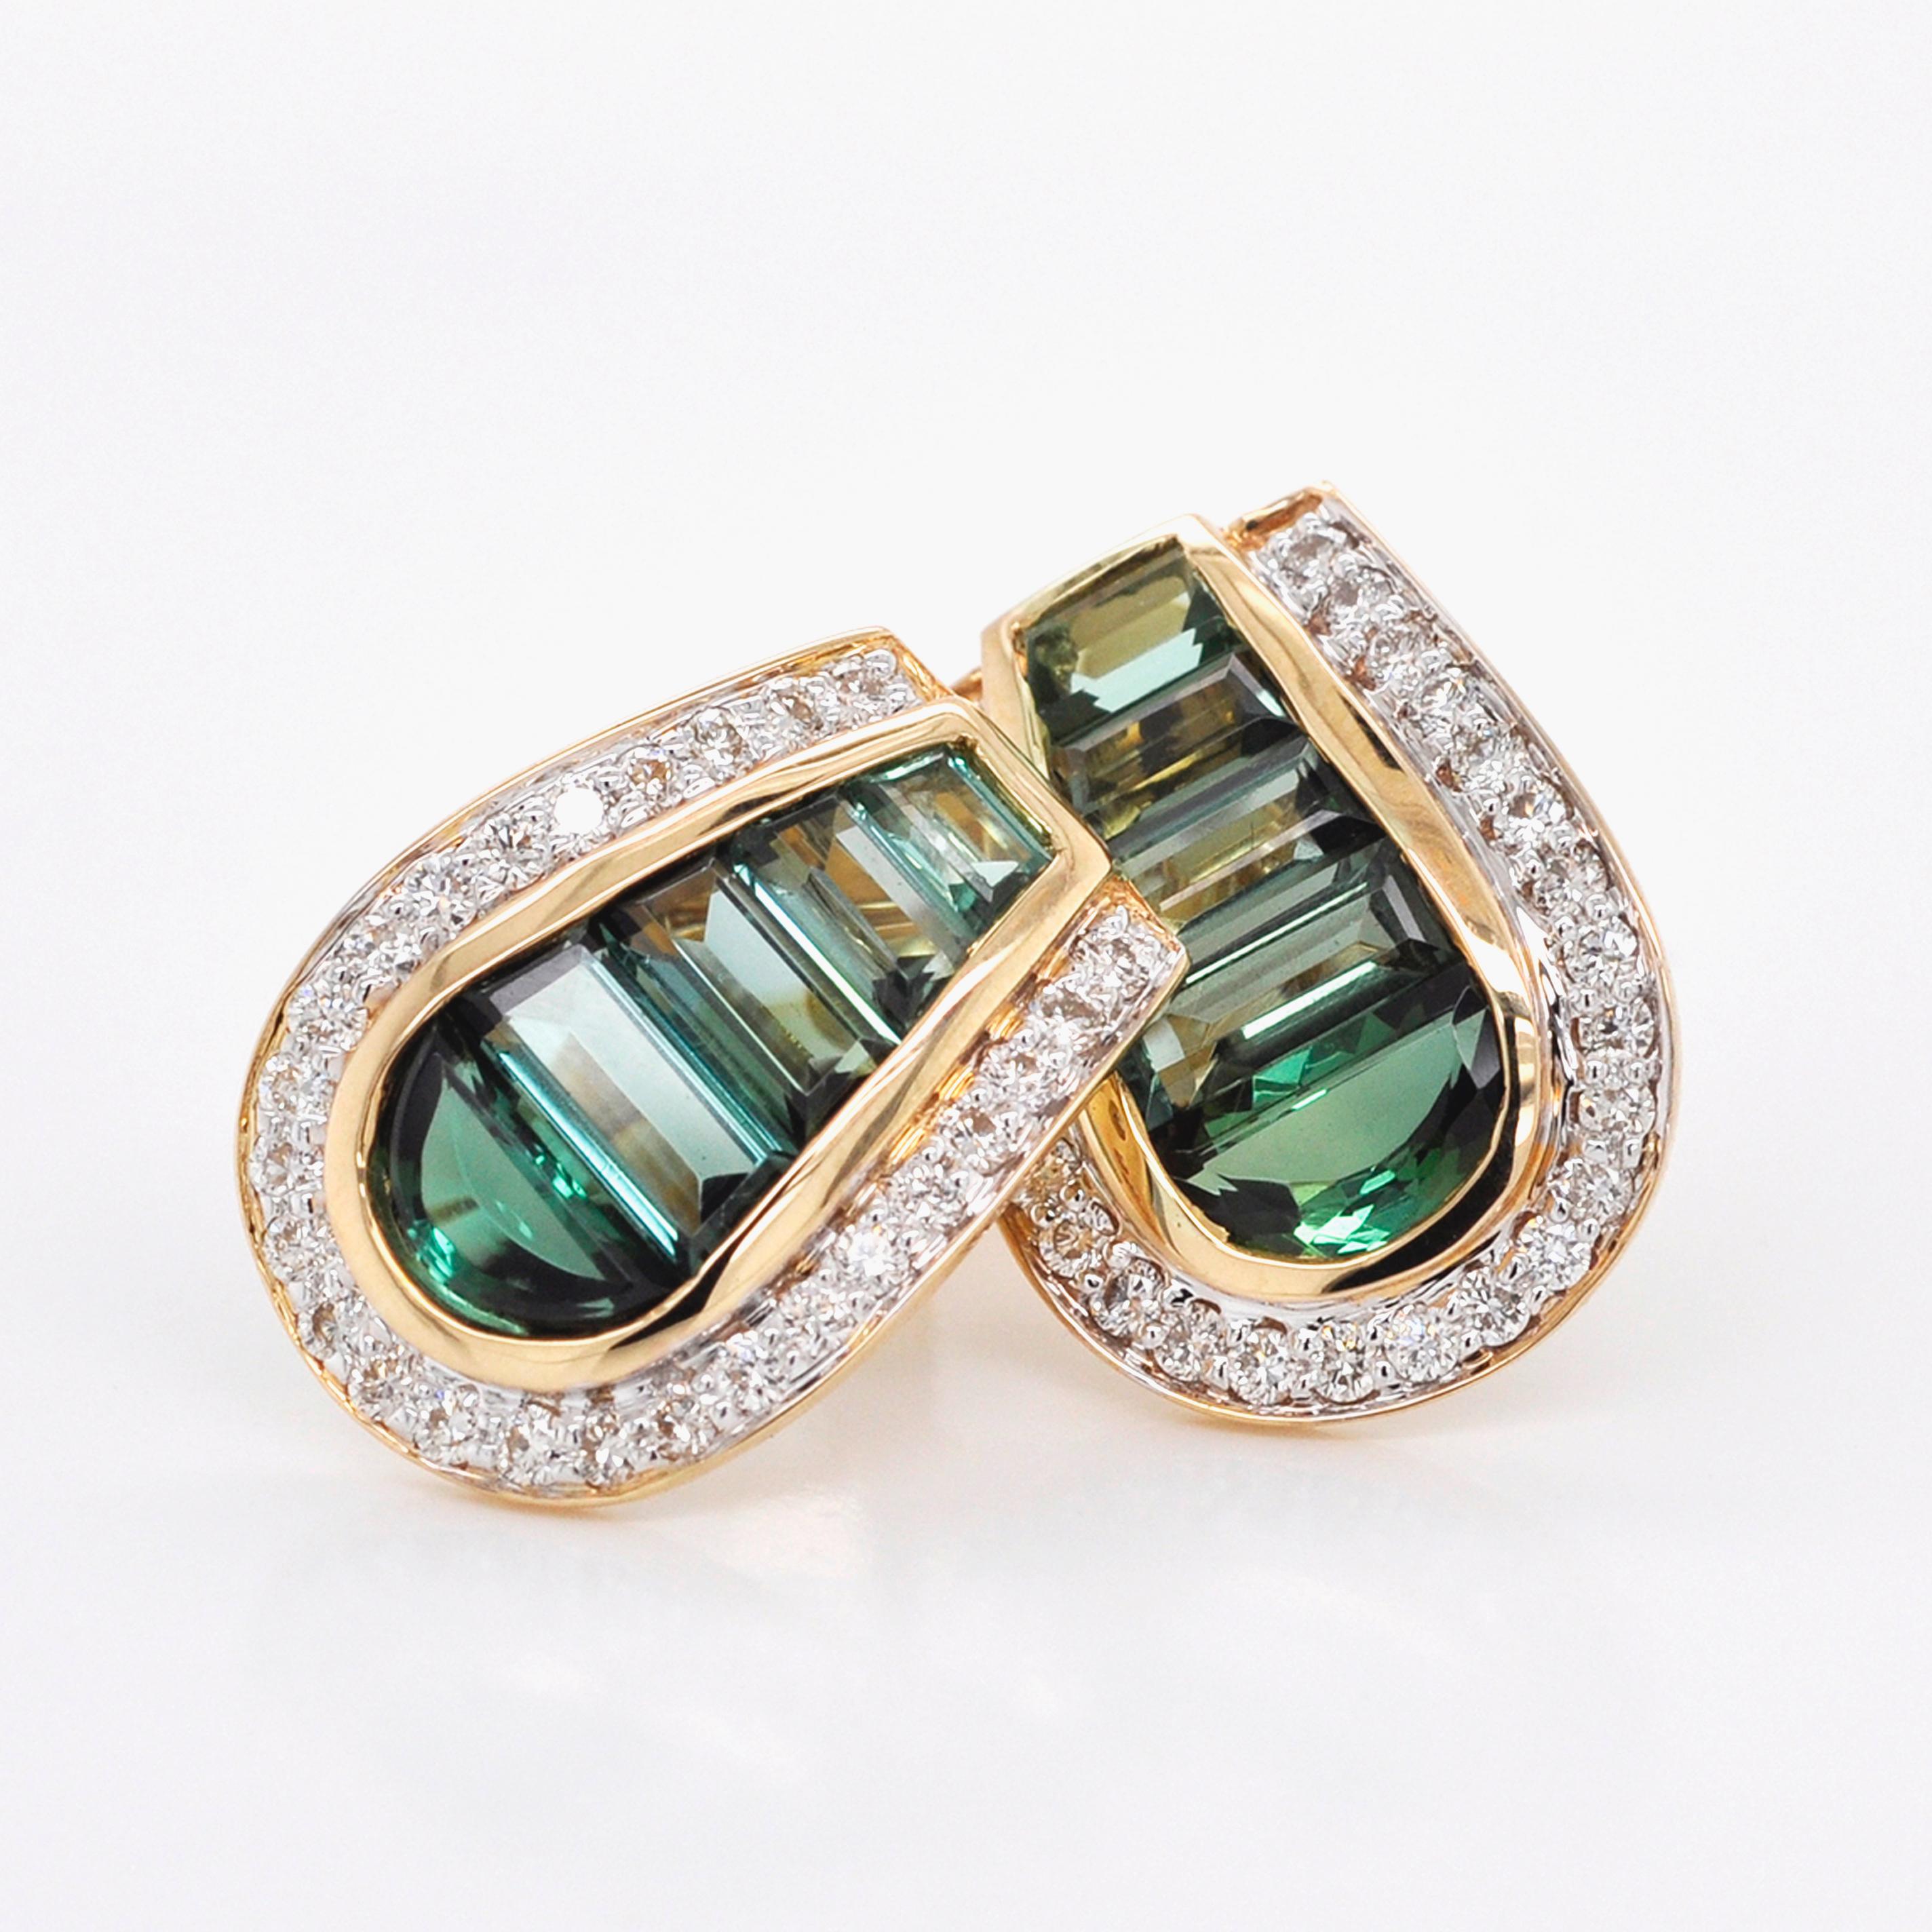 18 Karat Gold Art Deco Style Channel Set Green Tourmaline Diamond Studs Earrings 1